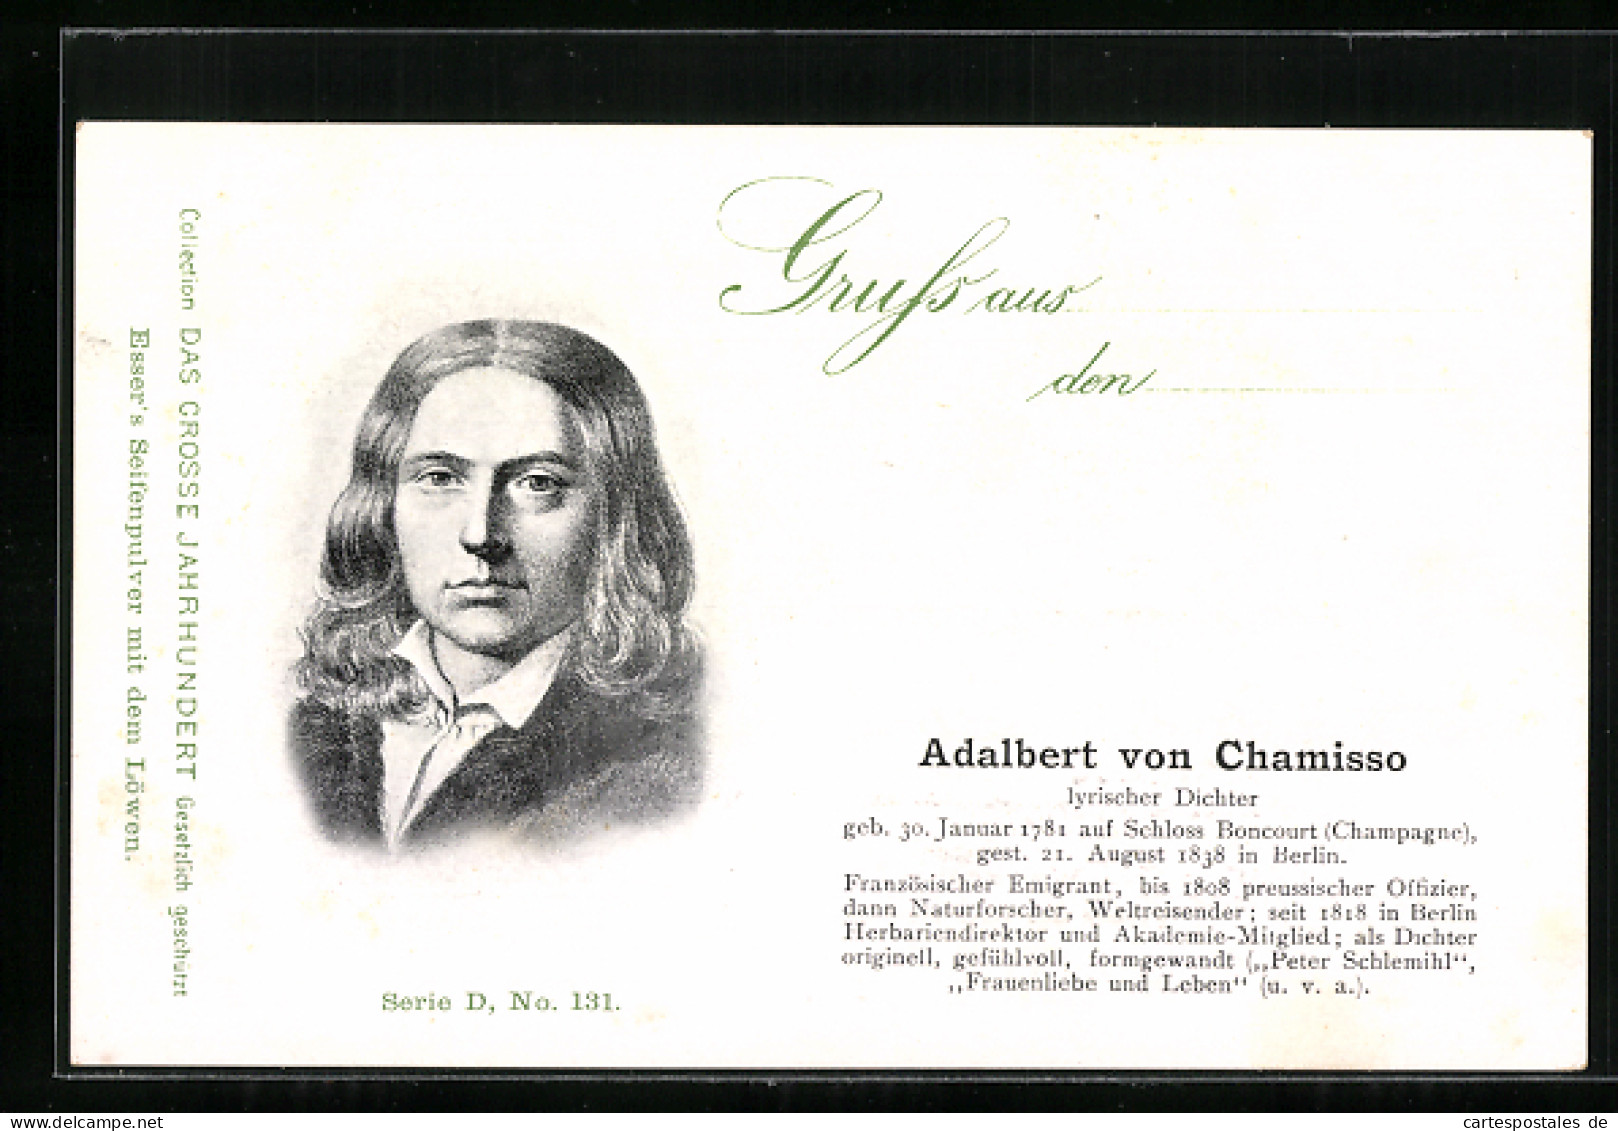 AK Adalbert Von Chamisso, Portrait Und Kurzvita  - Schriftsteller